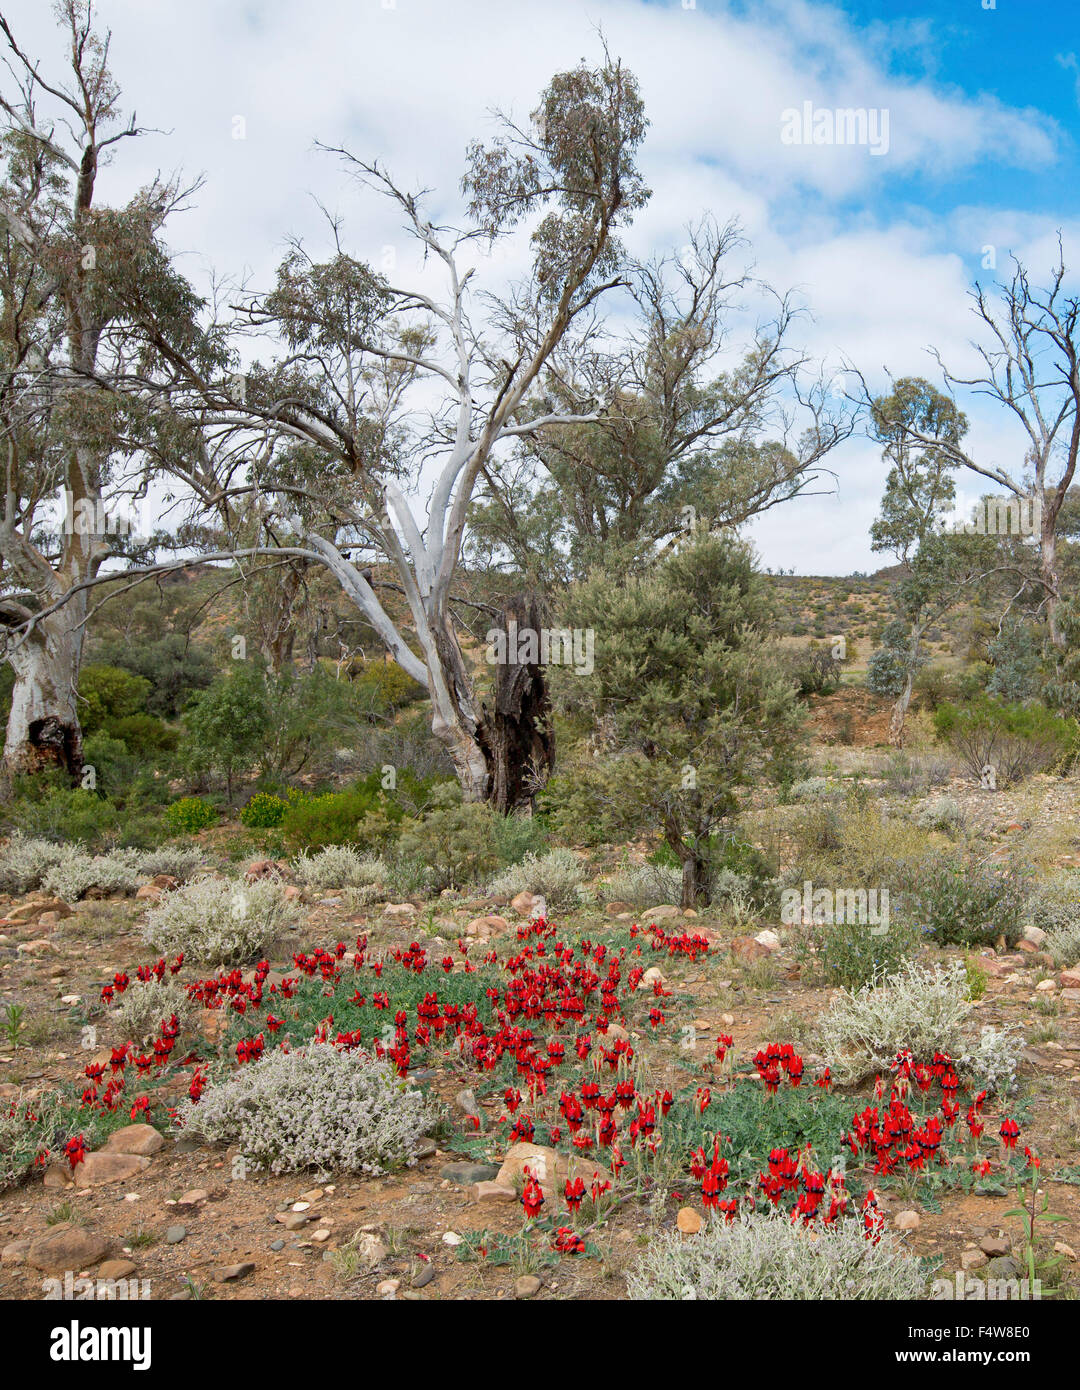 Paesaggio colorato in Australia outback con tappeto di fiori rossi di Sturt deserto del pisello, Swainsona formosa & alberi di gomma sotto il cielo blu Foto Stock